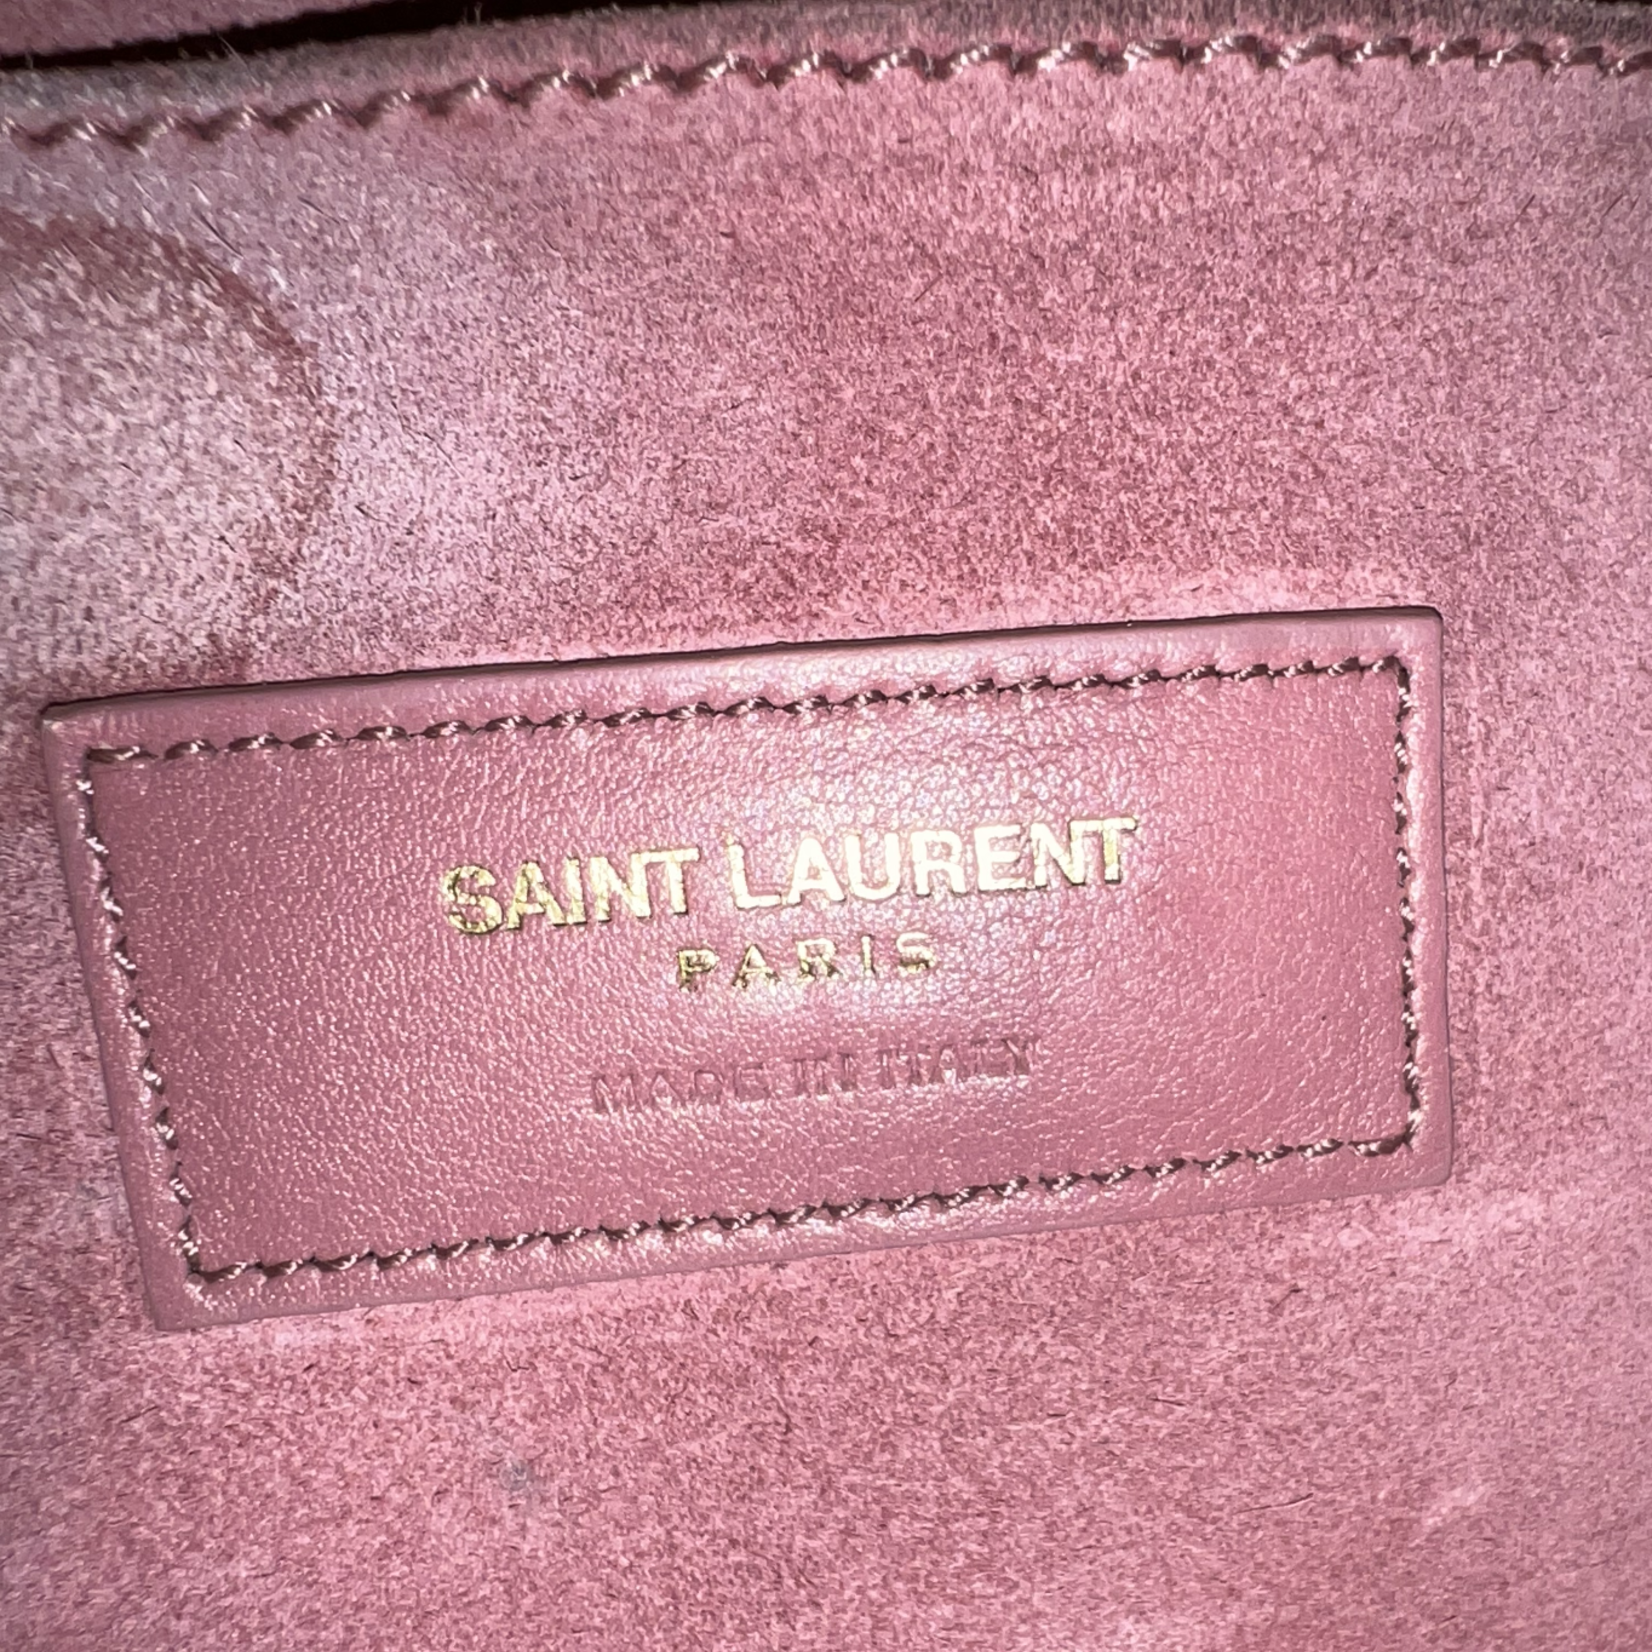 Saint Laurent Sac De Jour Nano- Mauve - Bijoux Bag Spa & Consignment